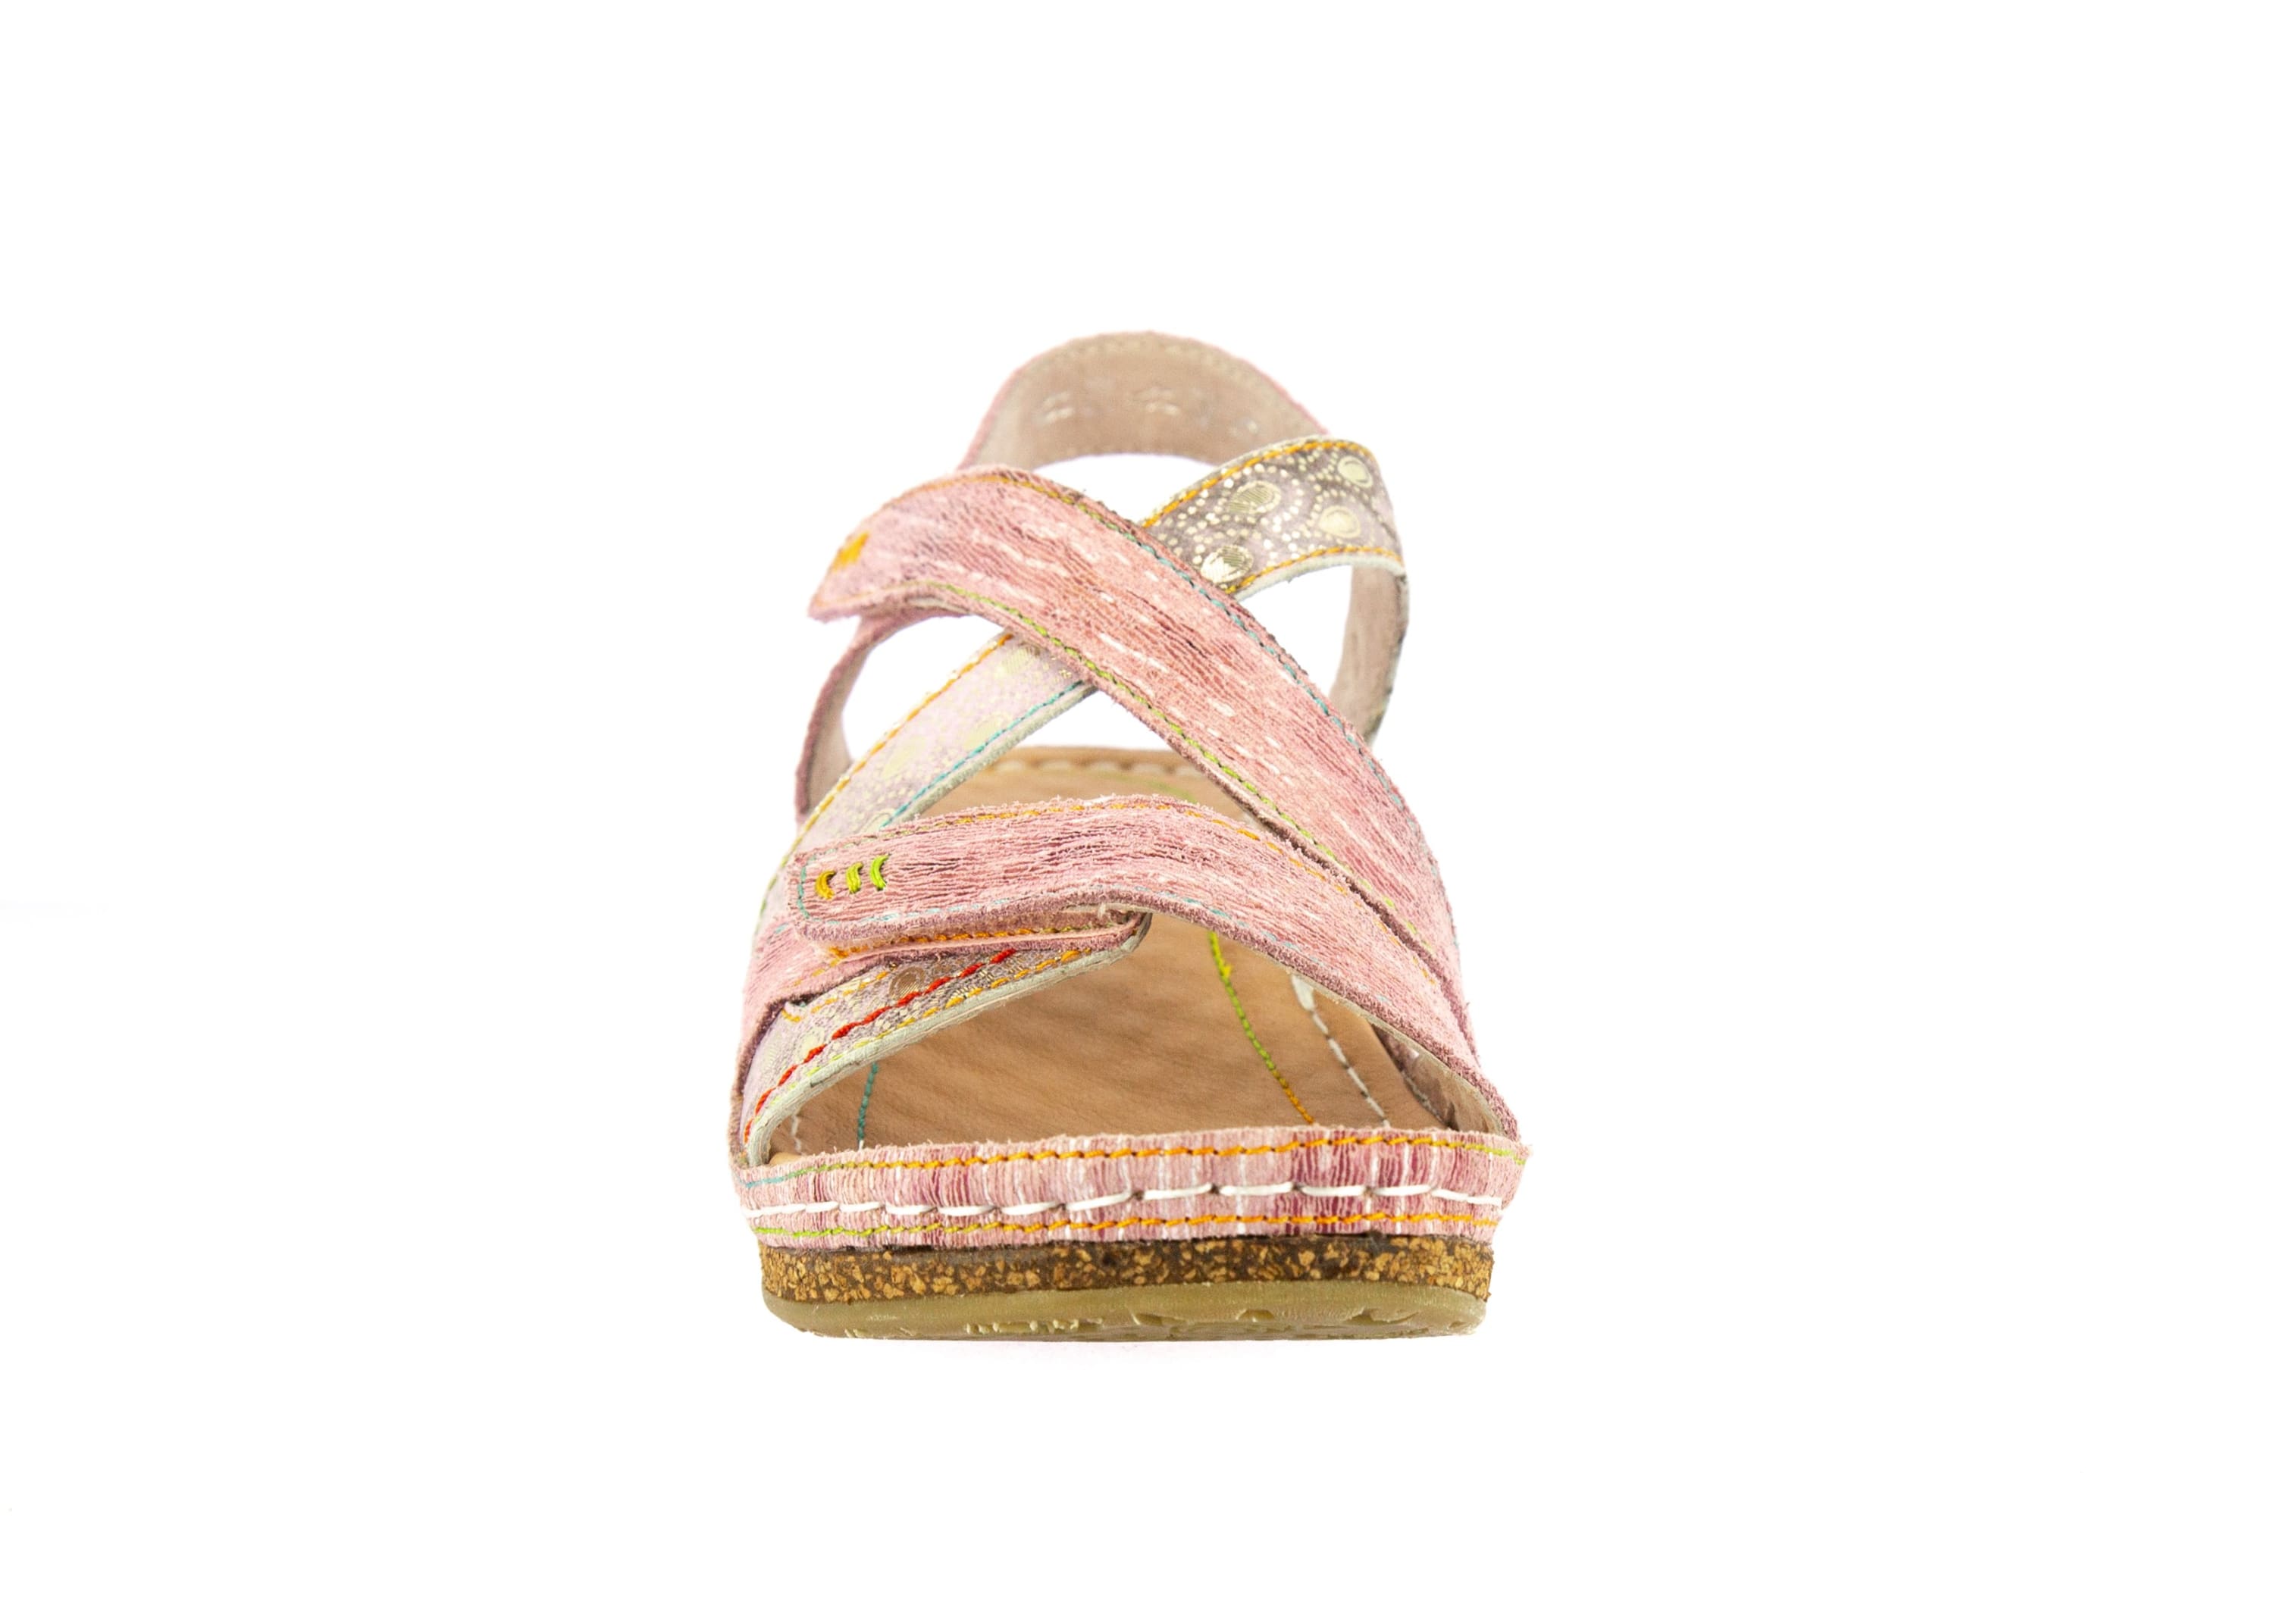 Shoe FACRAHO05 - Sandal